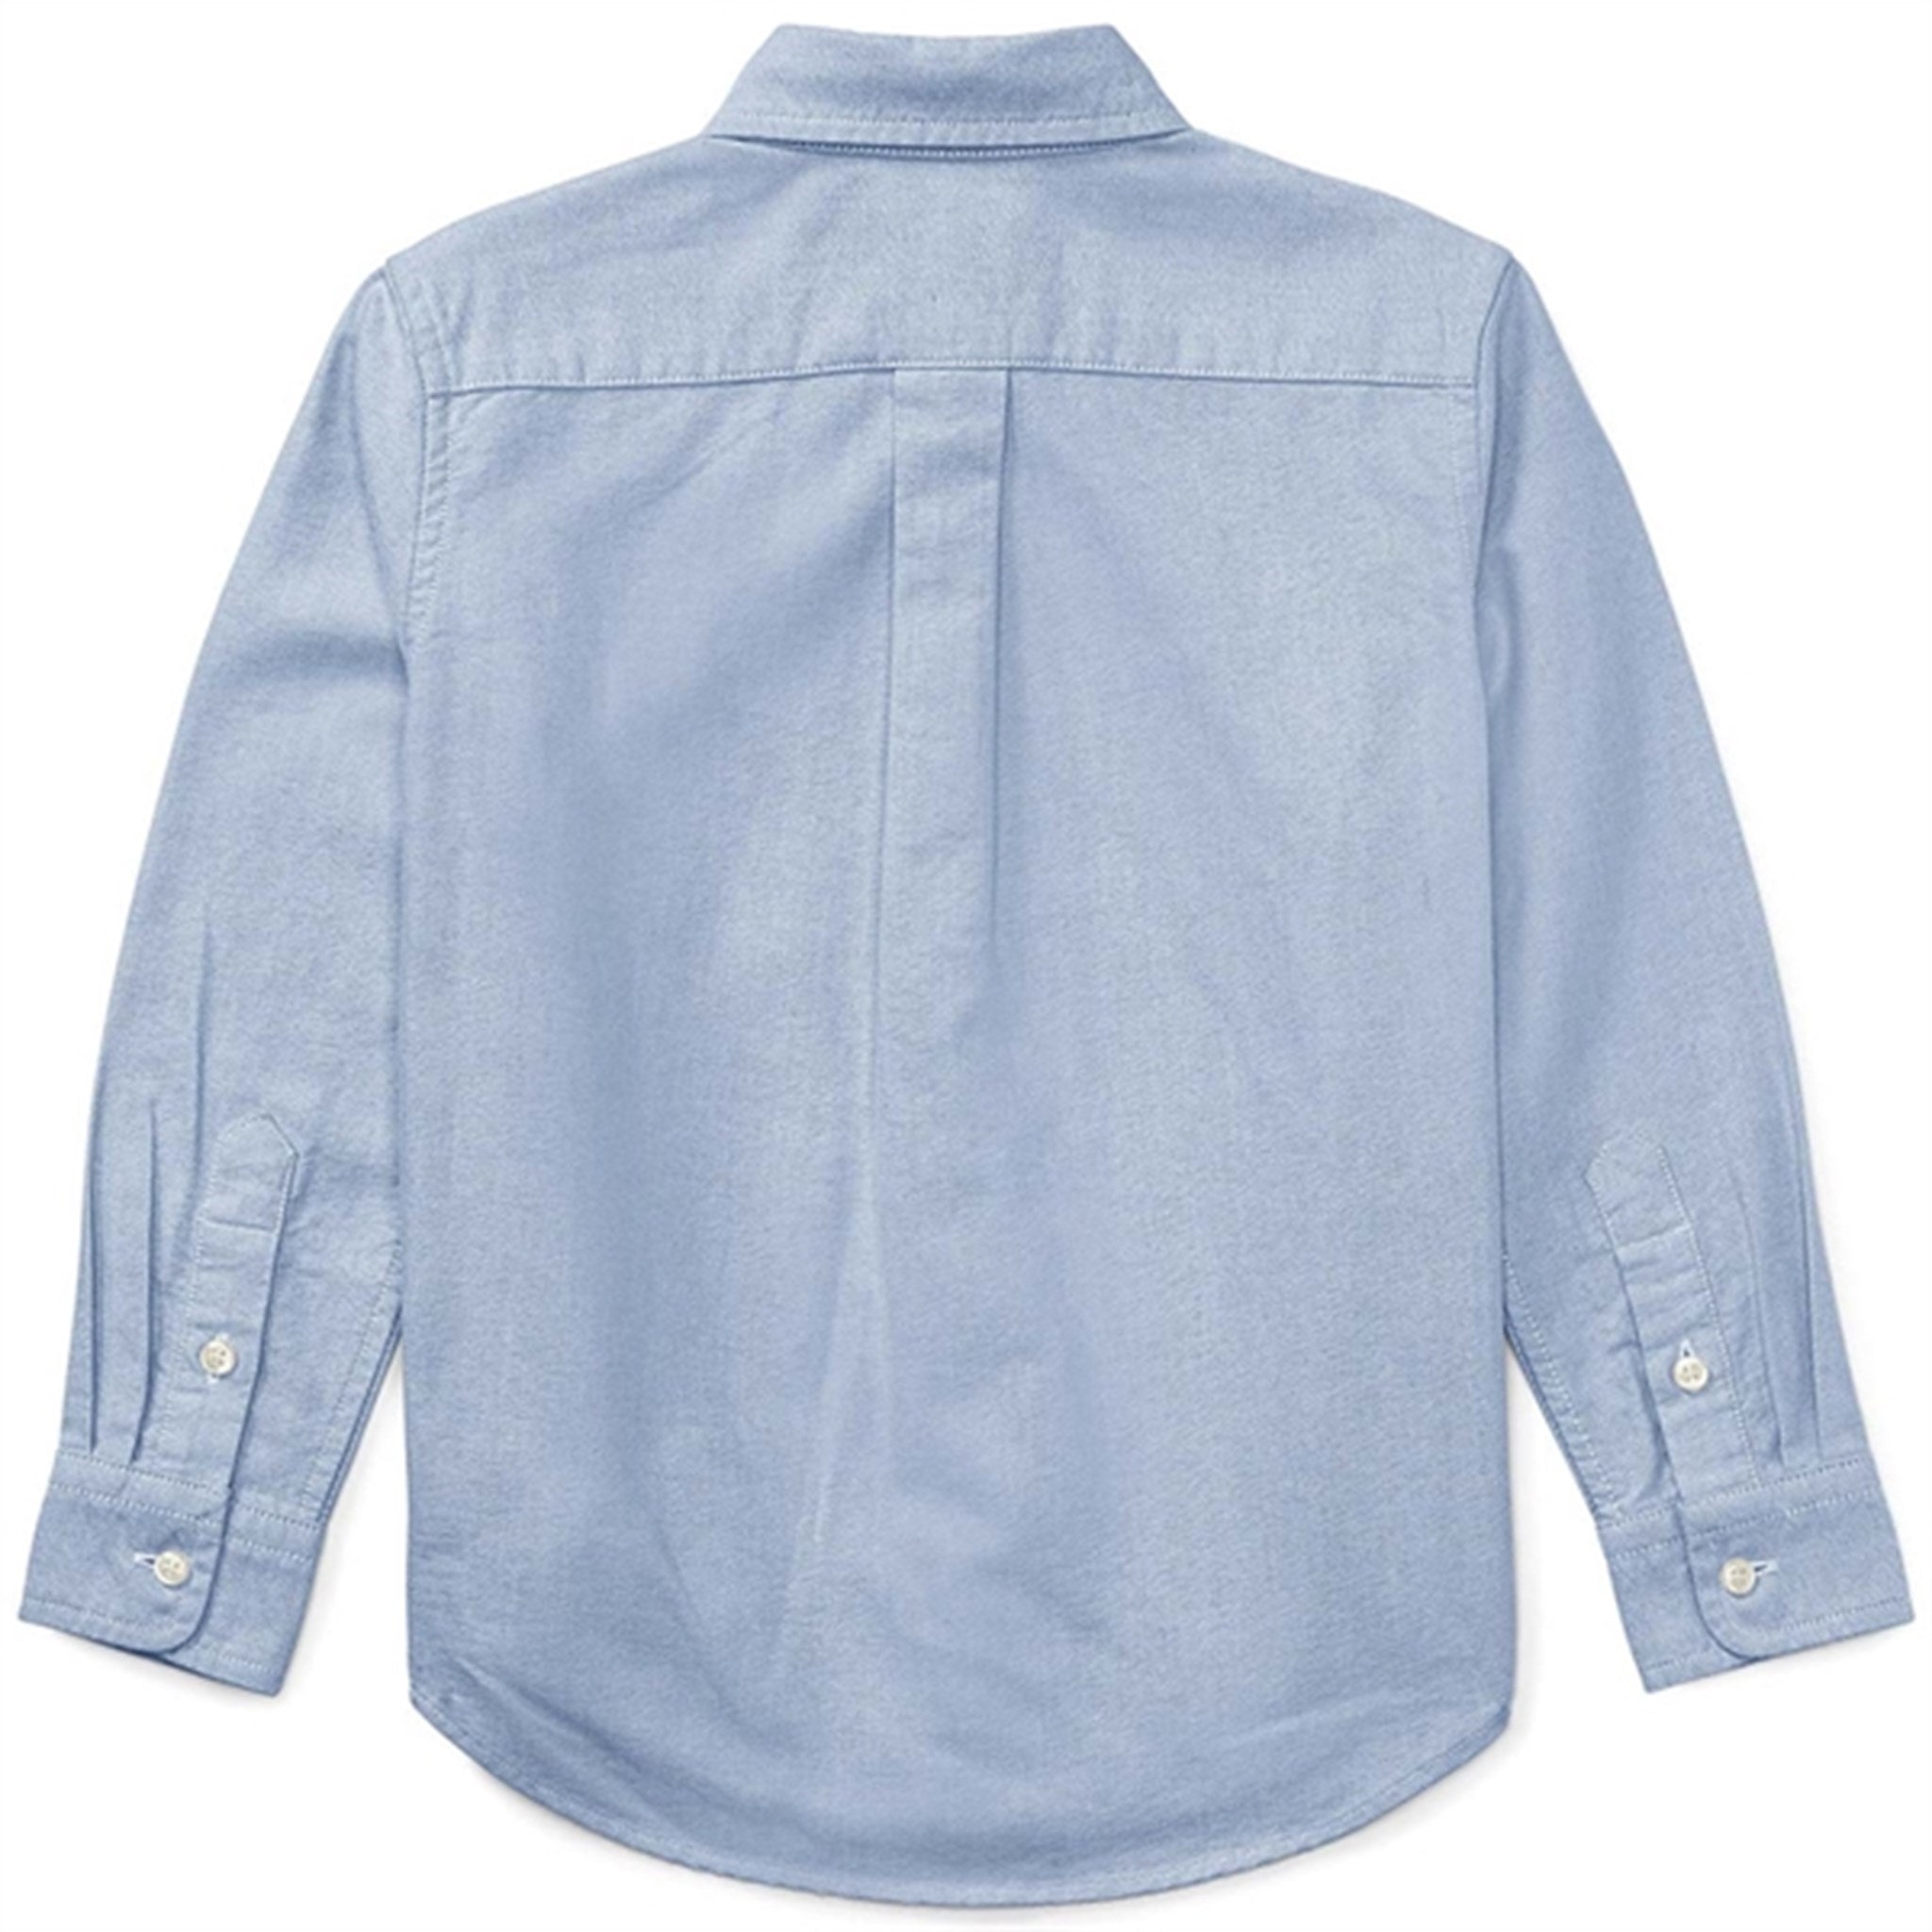 Polo Ralph Lauren Boy Long Sleeved Shirt BSR Blue 2